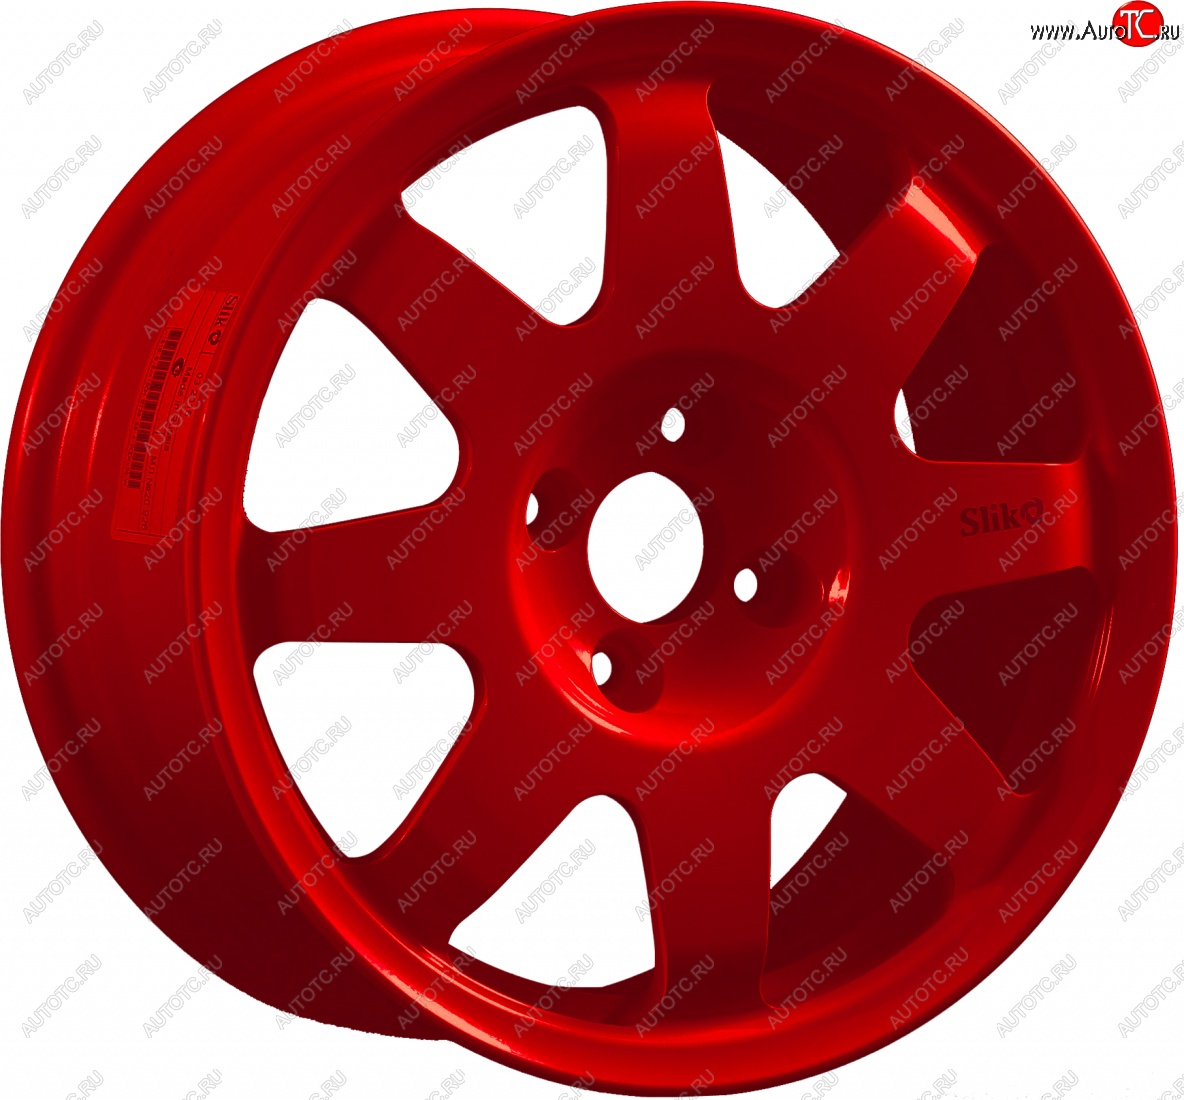 15 599 р. Кованый диск Slik Classic Sport L-181S 6.5x15   (Красный (RED))